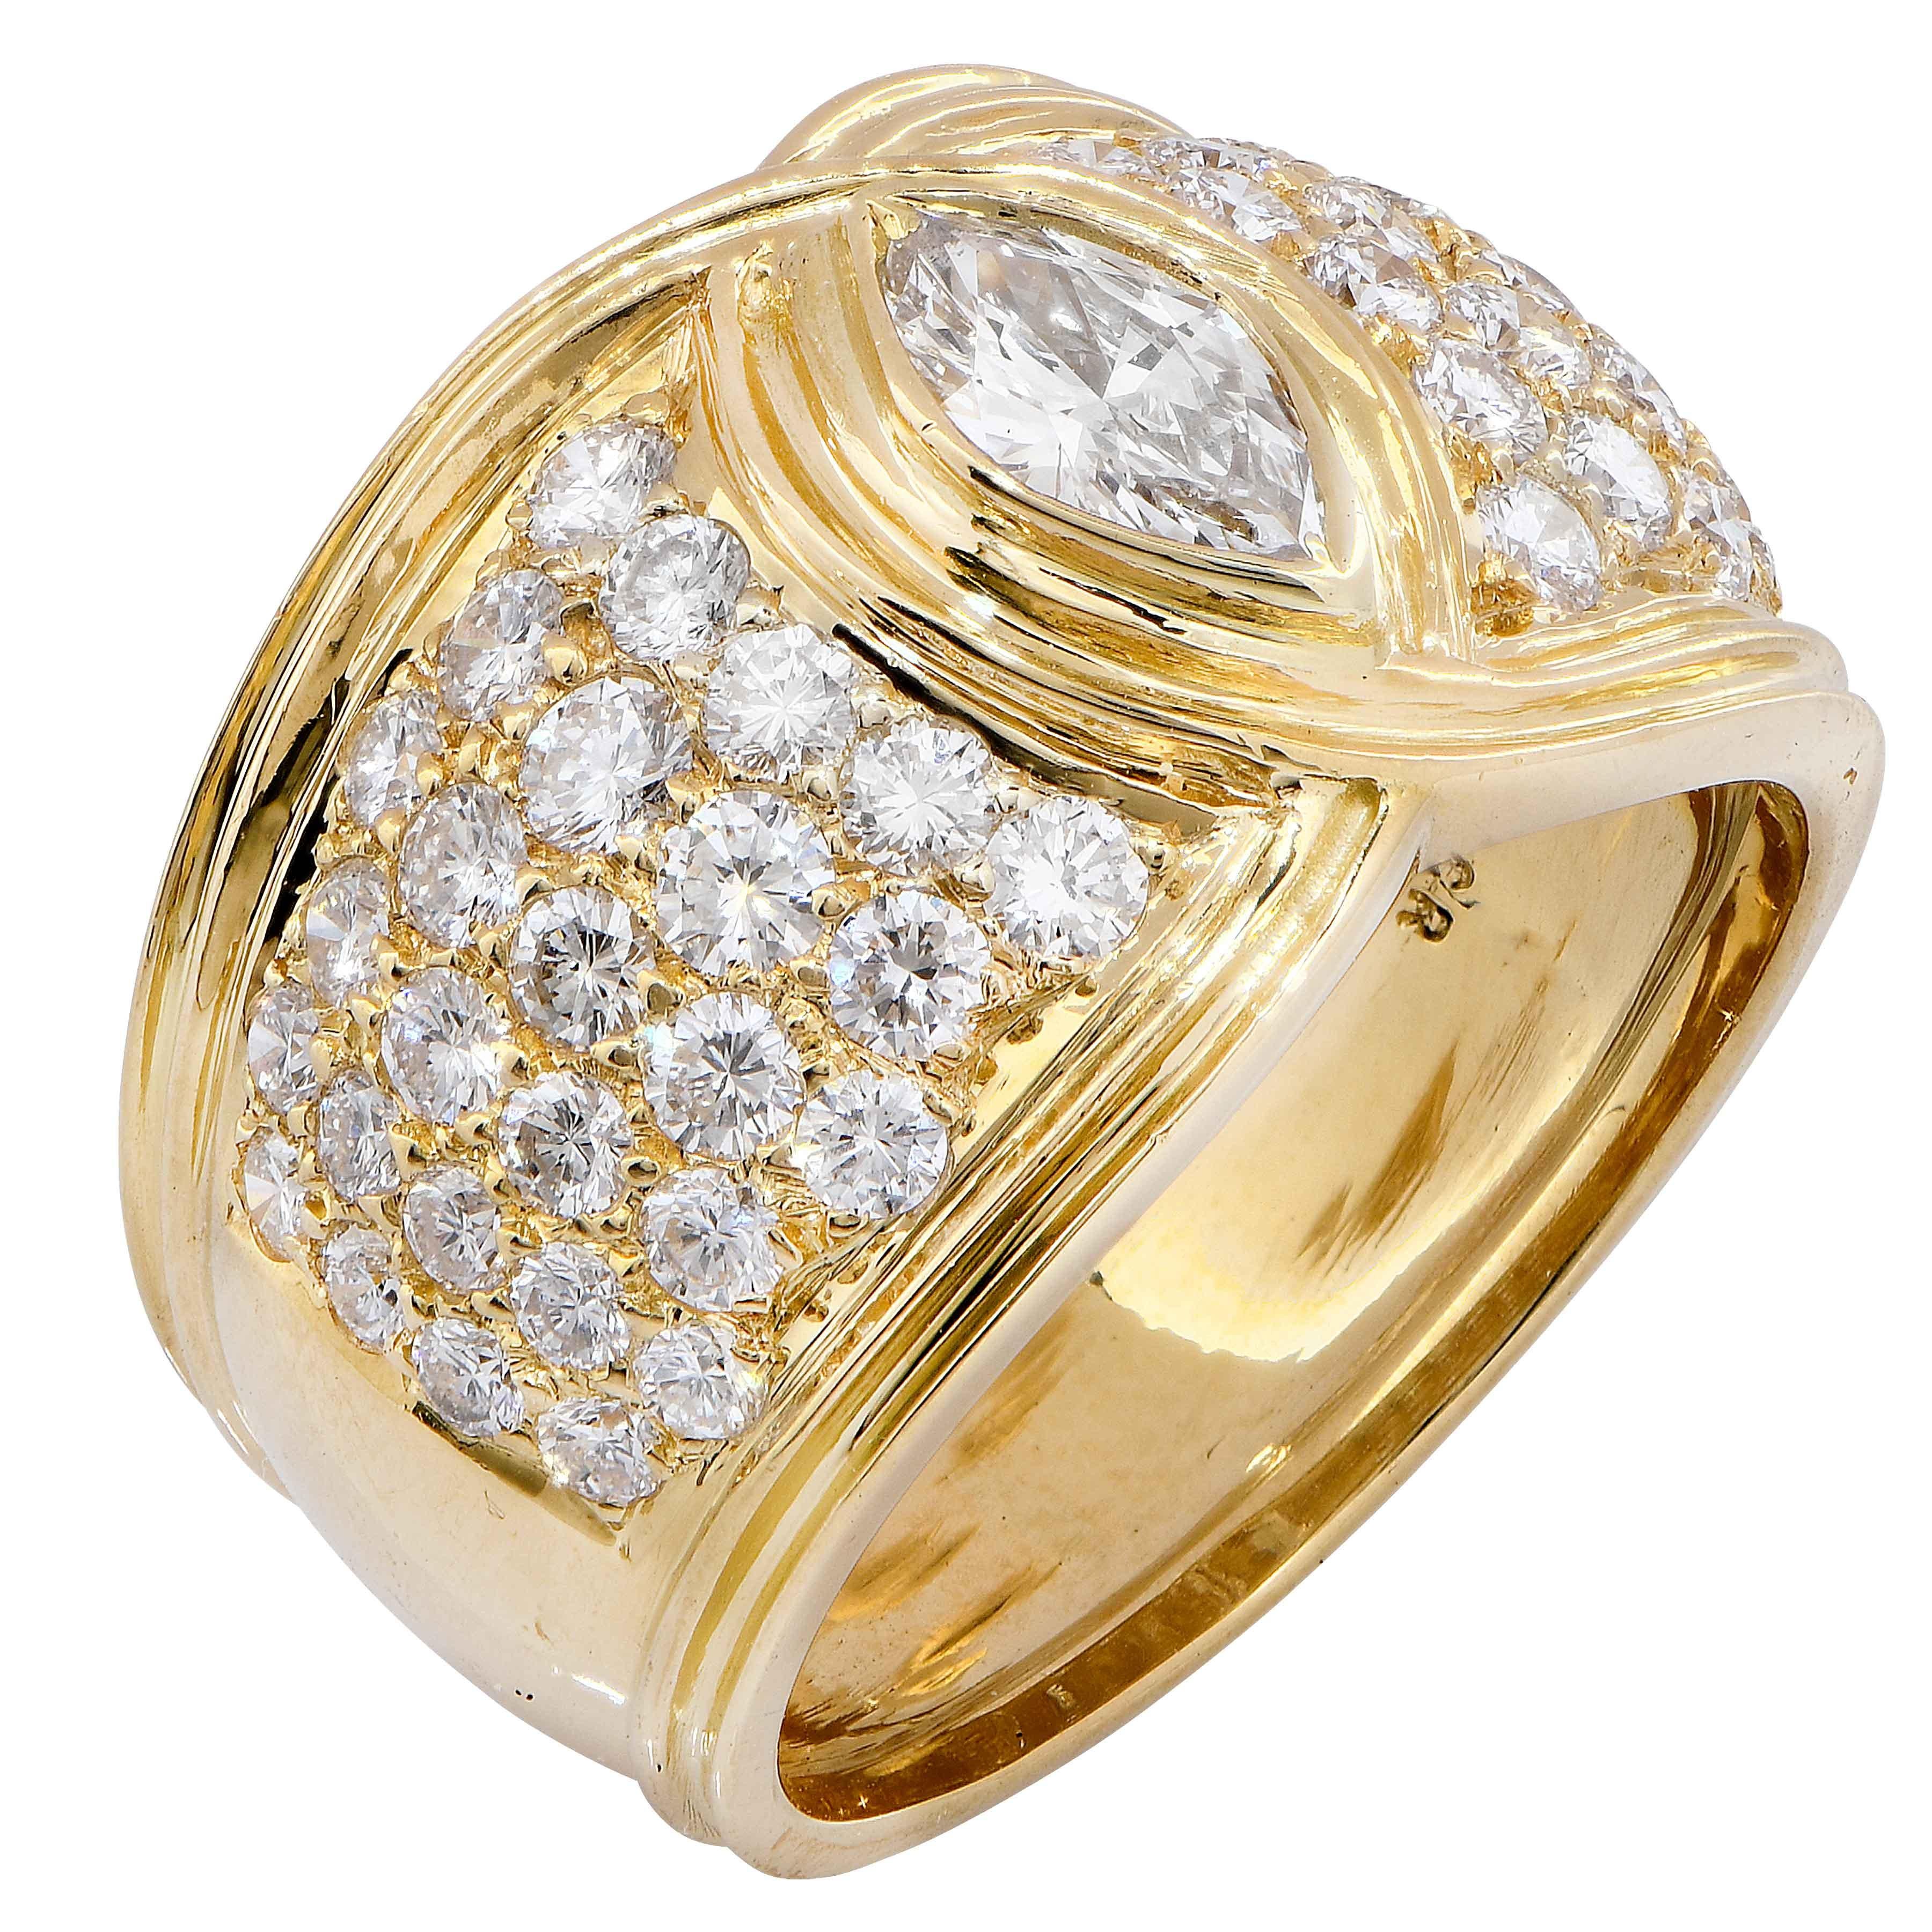 Modern 2.5 Carat Diamond Ring in 18 Karat Yellow Gold